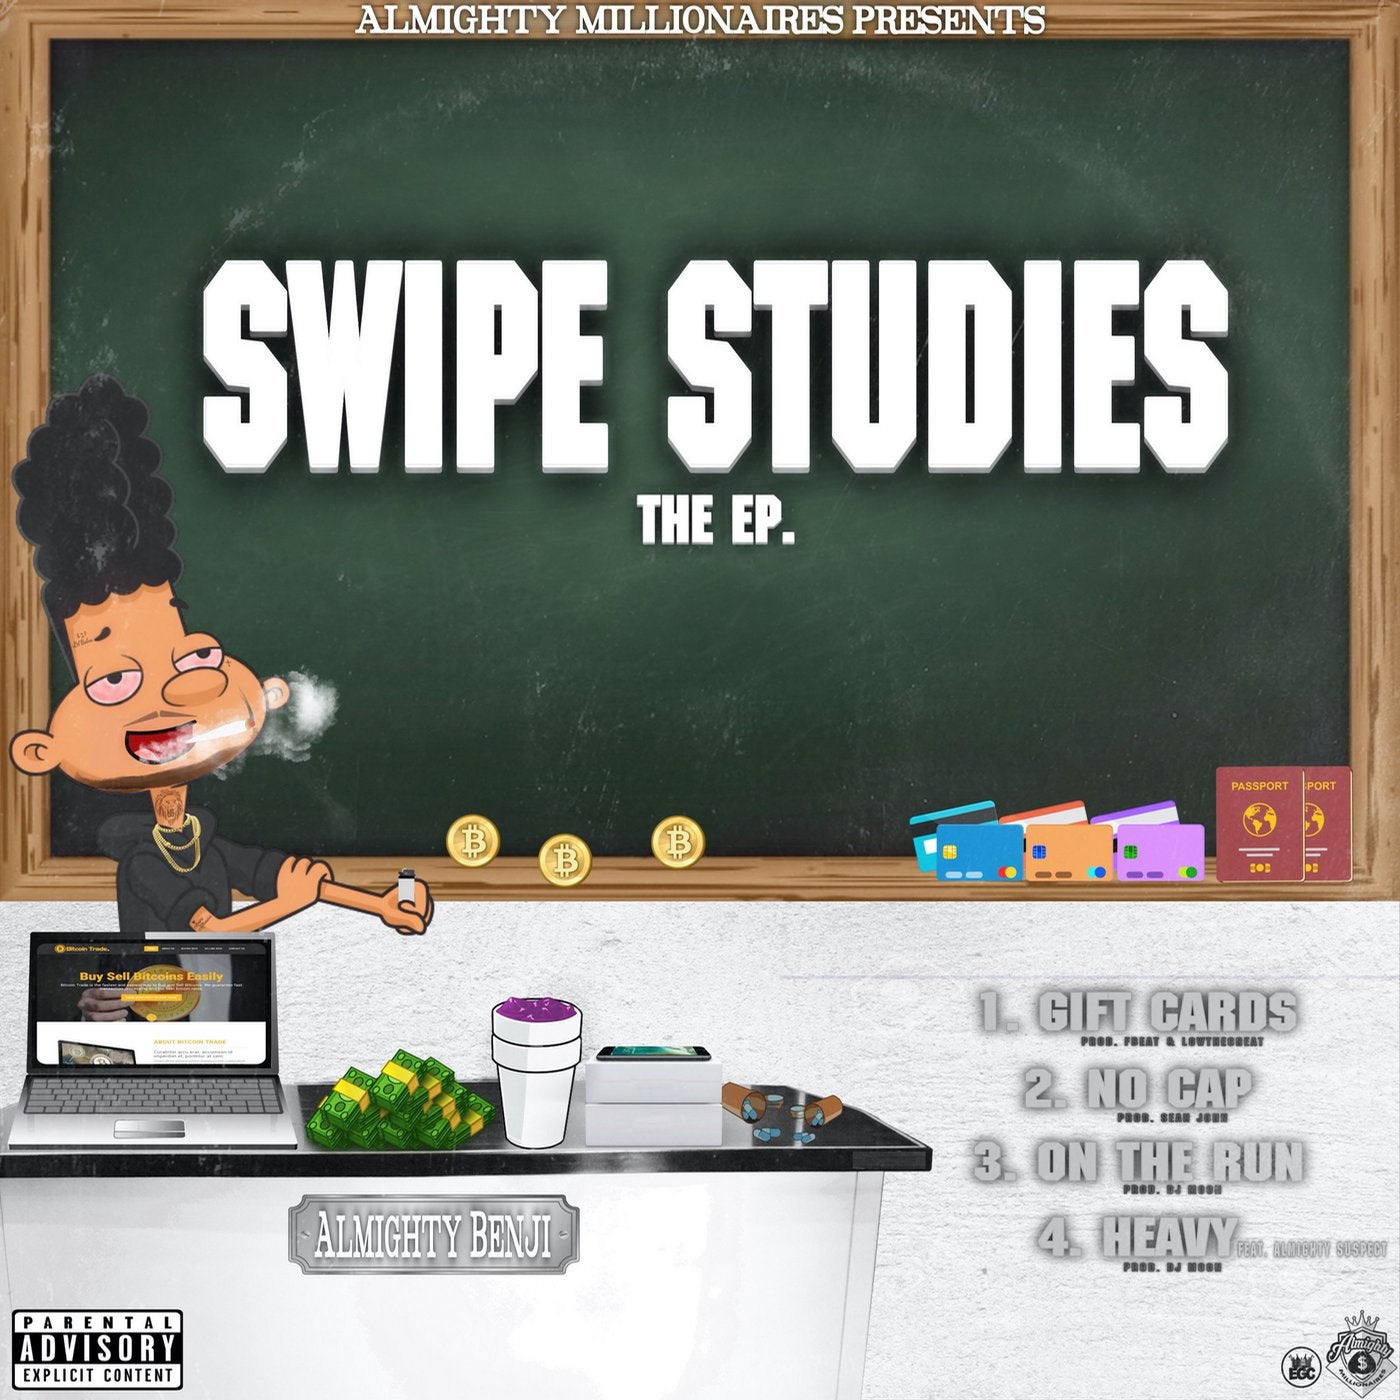 Swipe Studies The EP